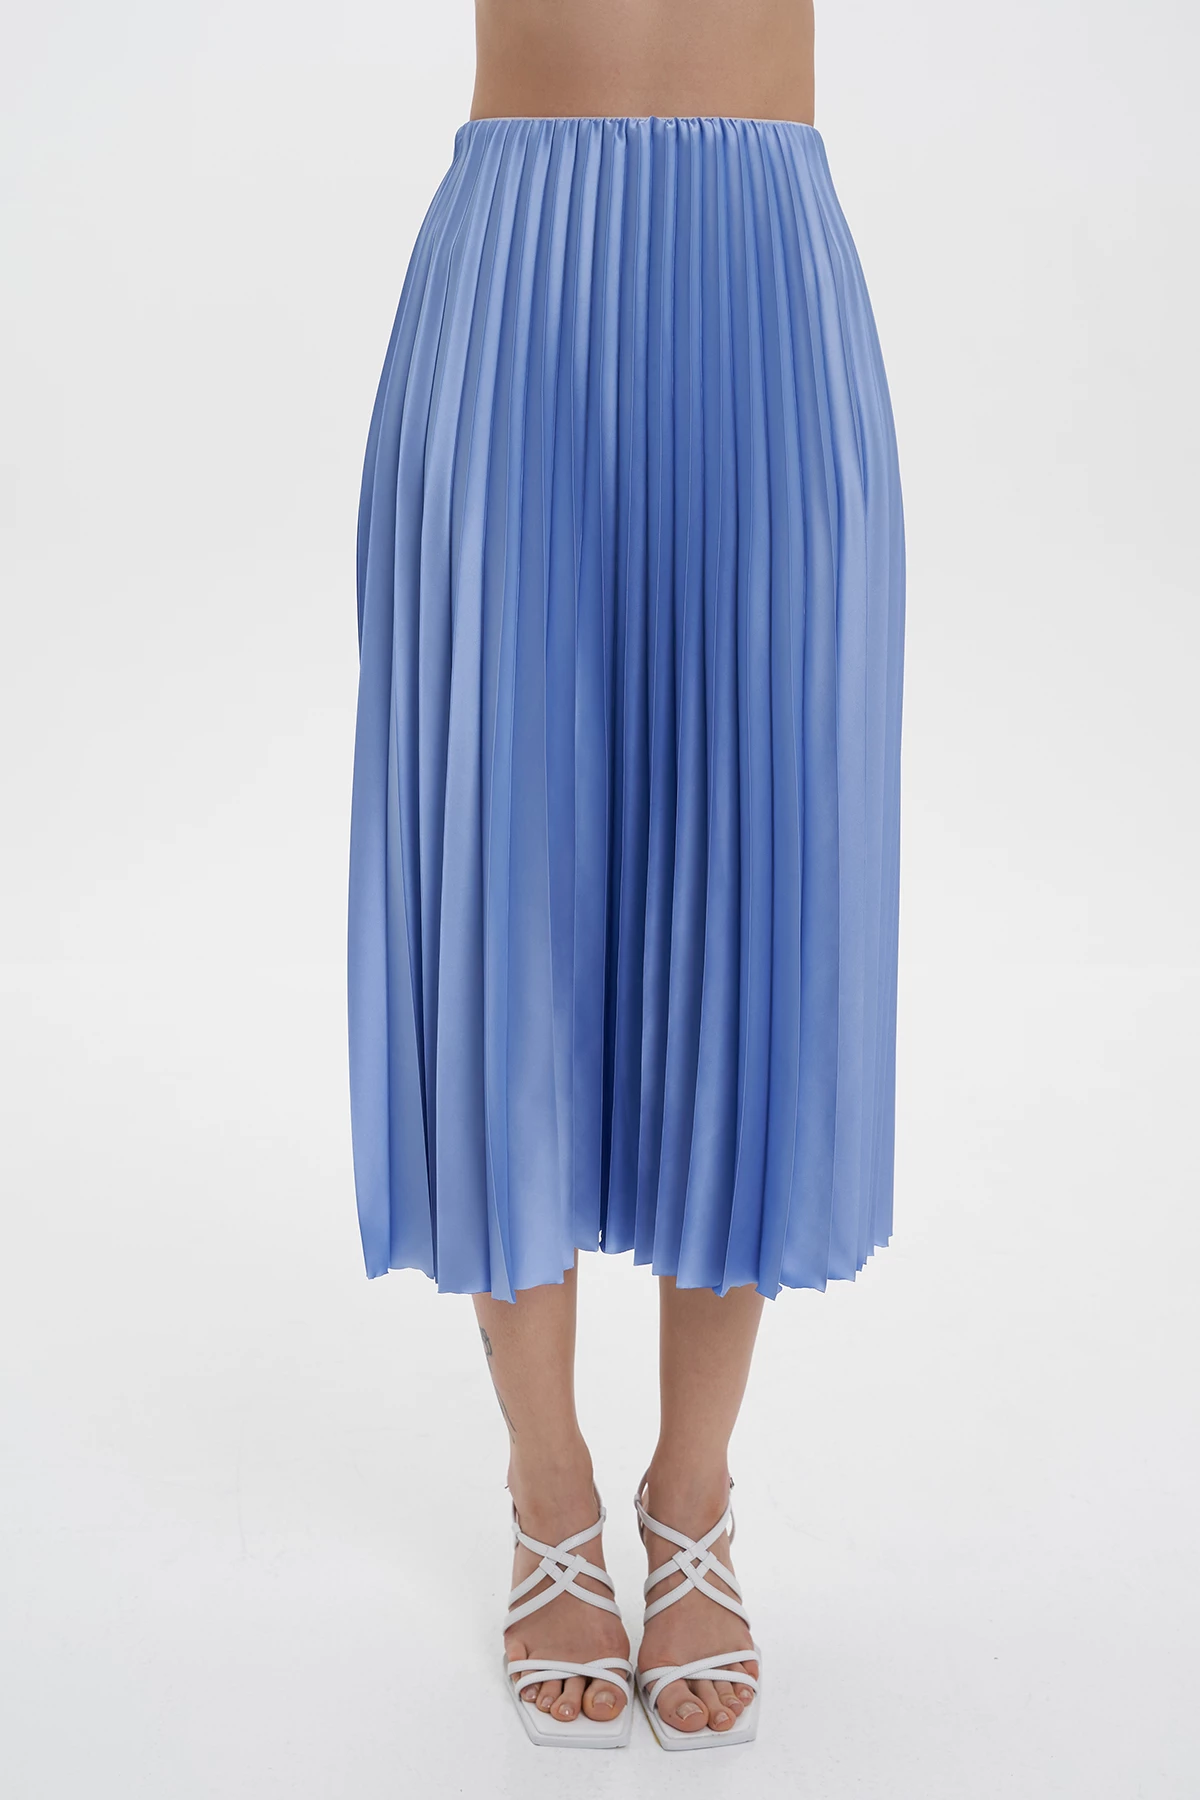 Blue satin midi-length pleated skirt, photo 4